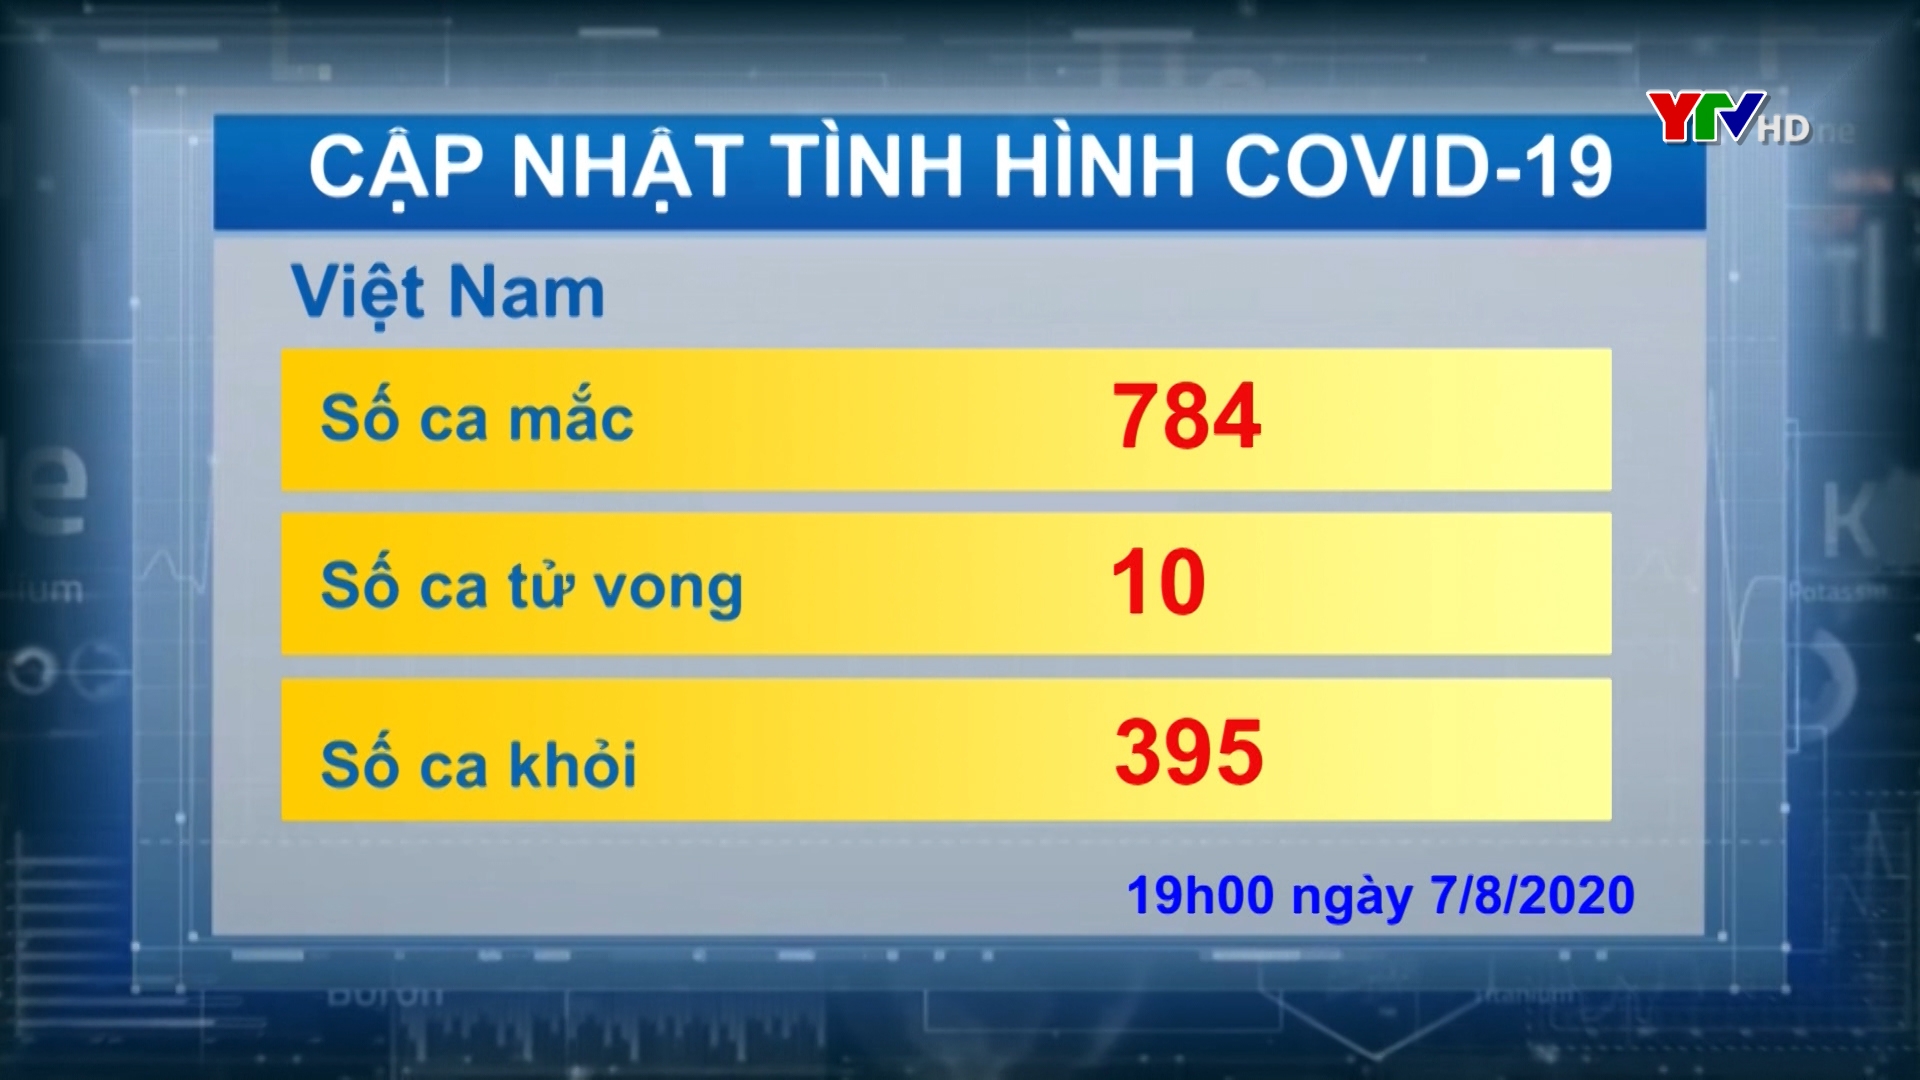 Việt Nam ghi nhận tổng số 784 ca nhiễm COVID - 19